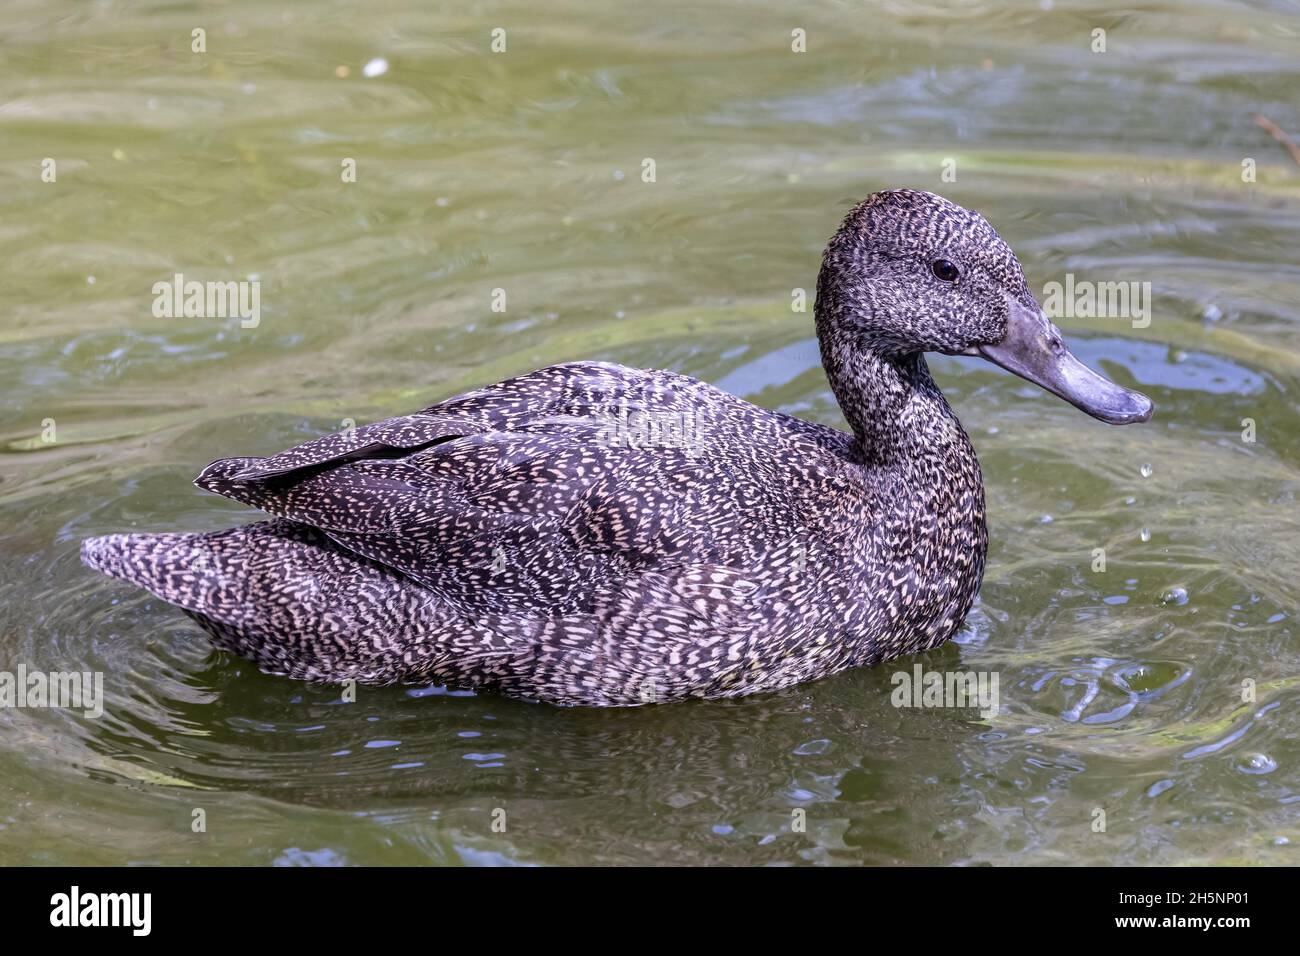 Australian endangered Freckled Duck on pond Stock Photo